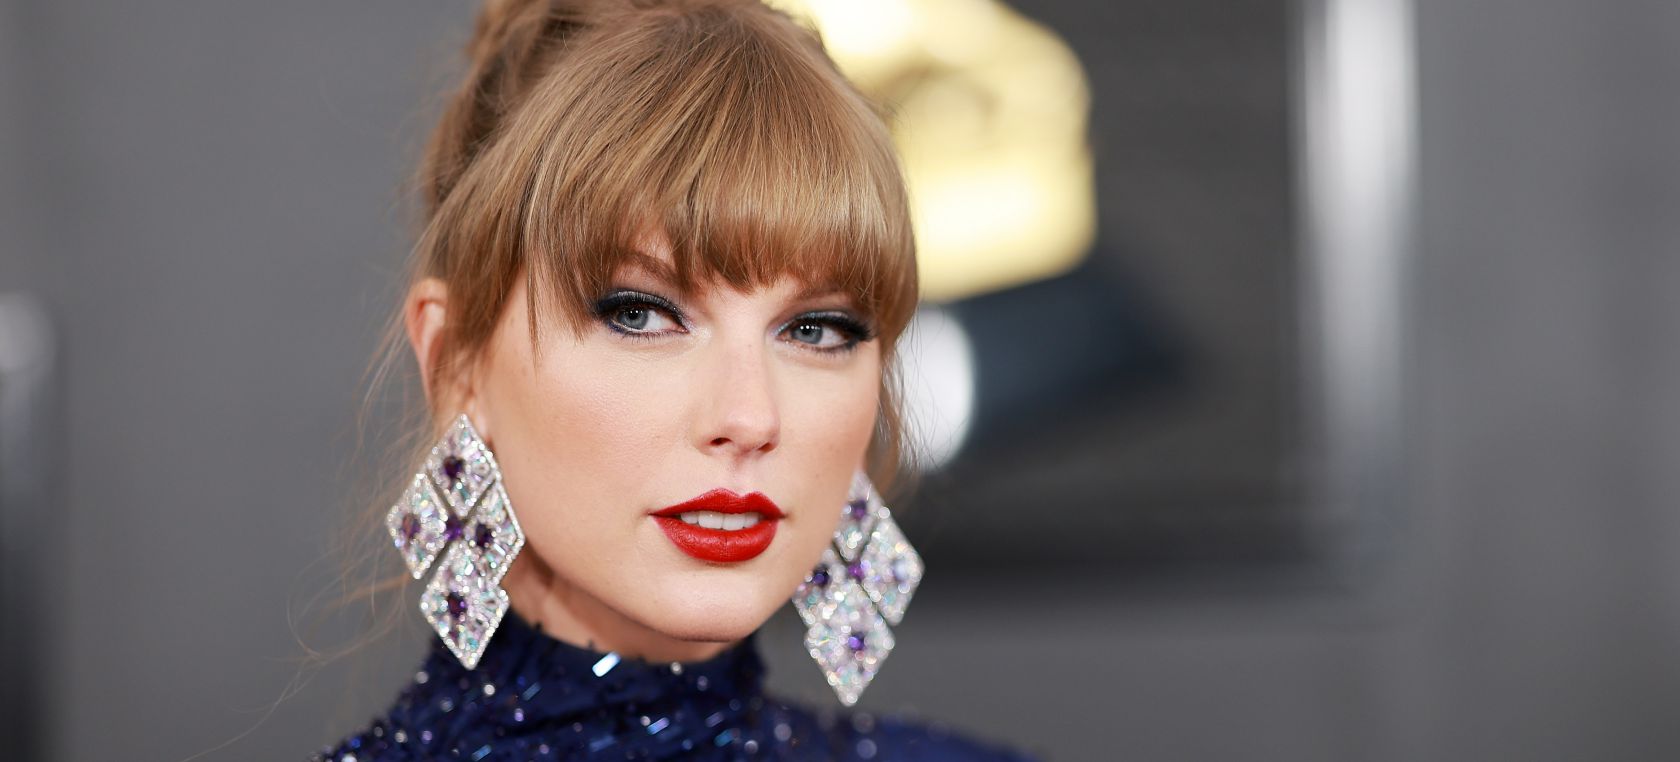 La ciudad de Glendale cambiará su nombre por el de Taylor Swift | Música |  LOS40